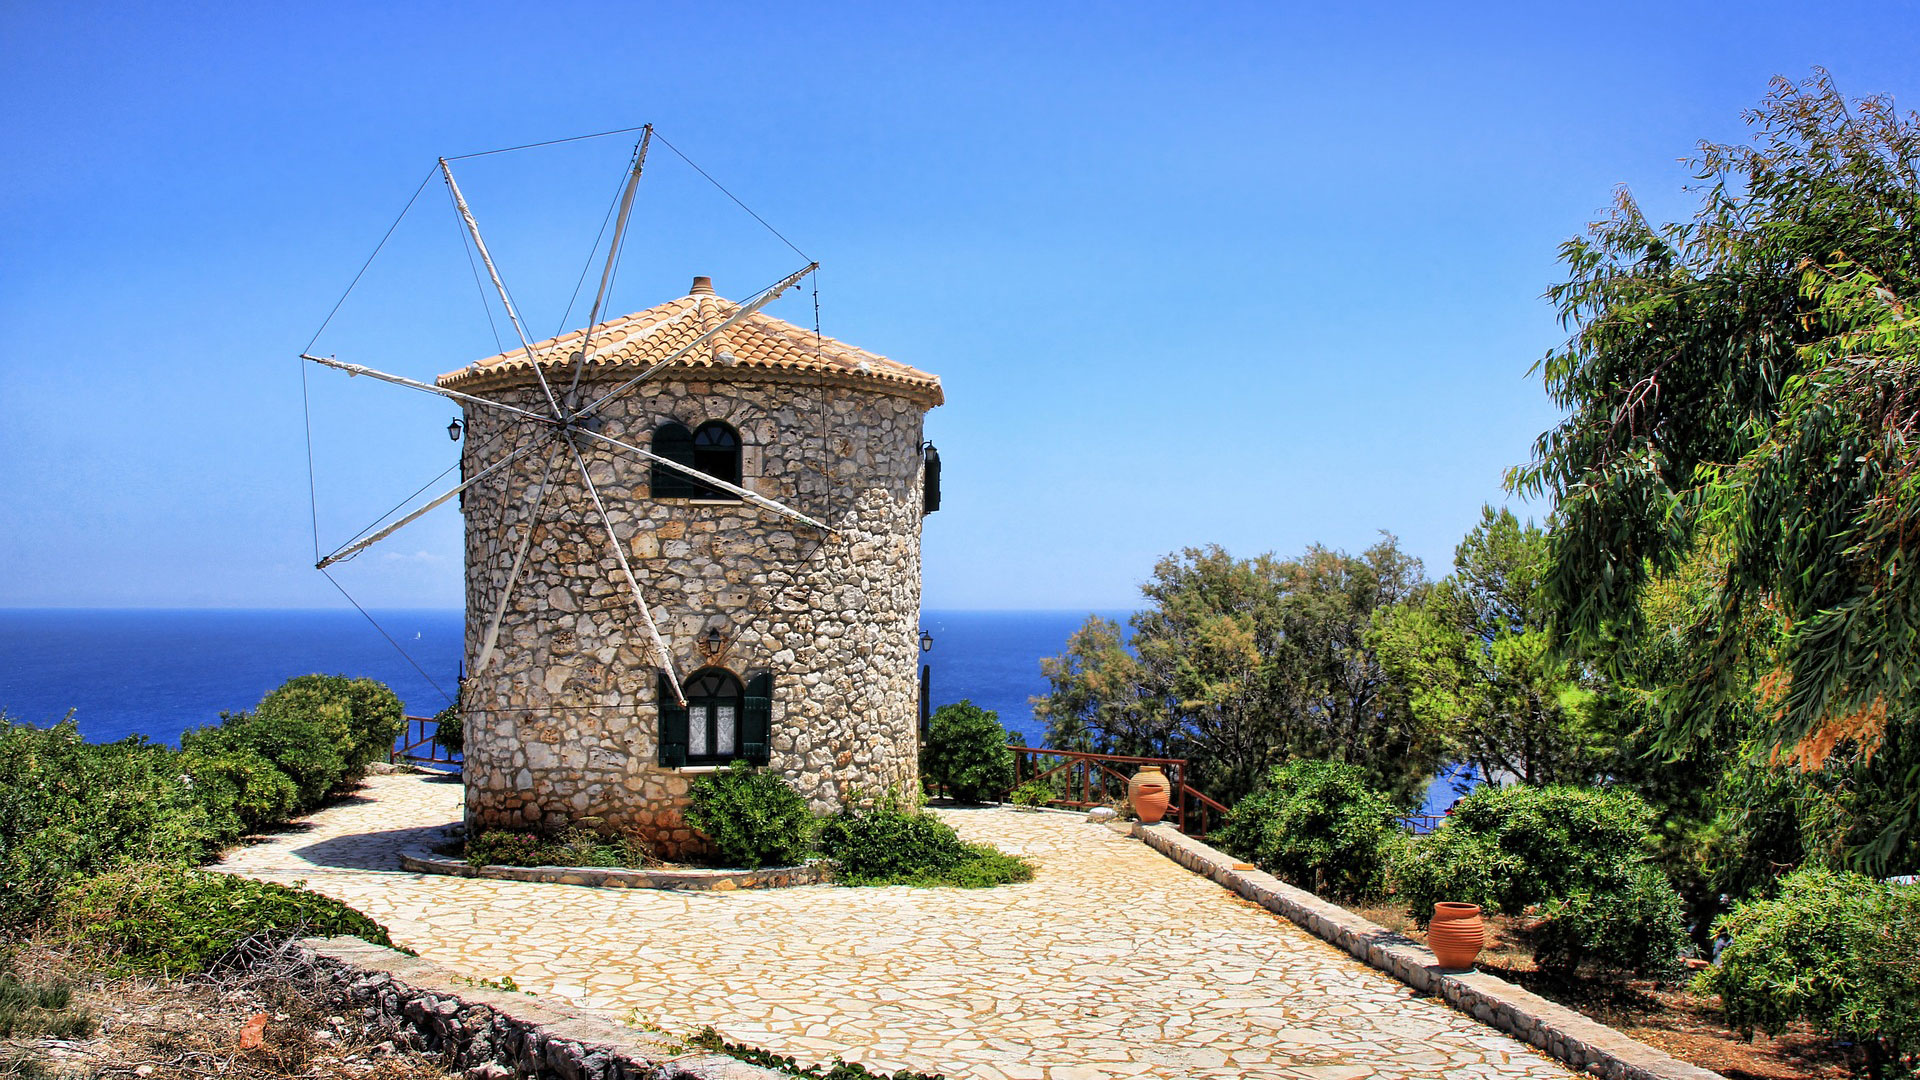 Le moulin en pierre de Zakynthos, Grèce